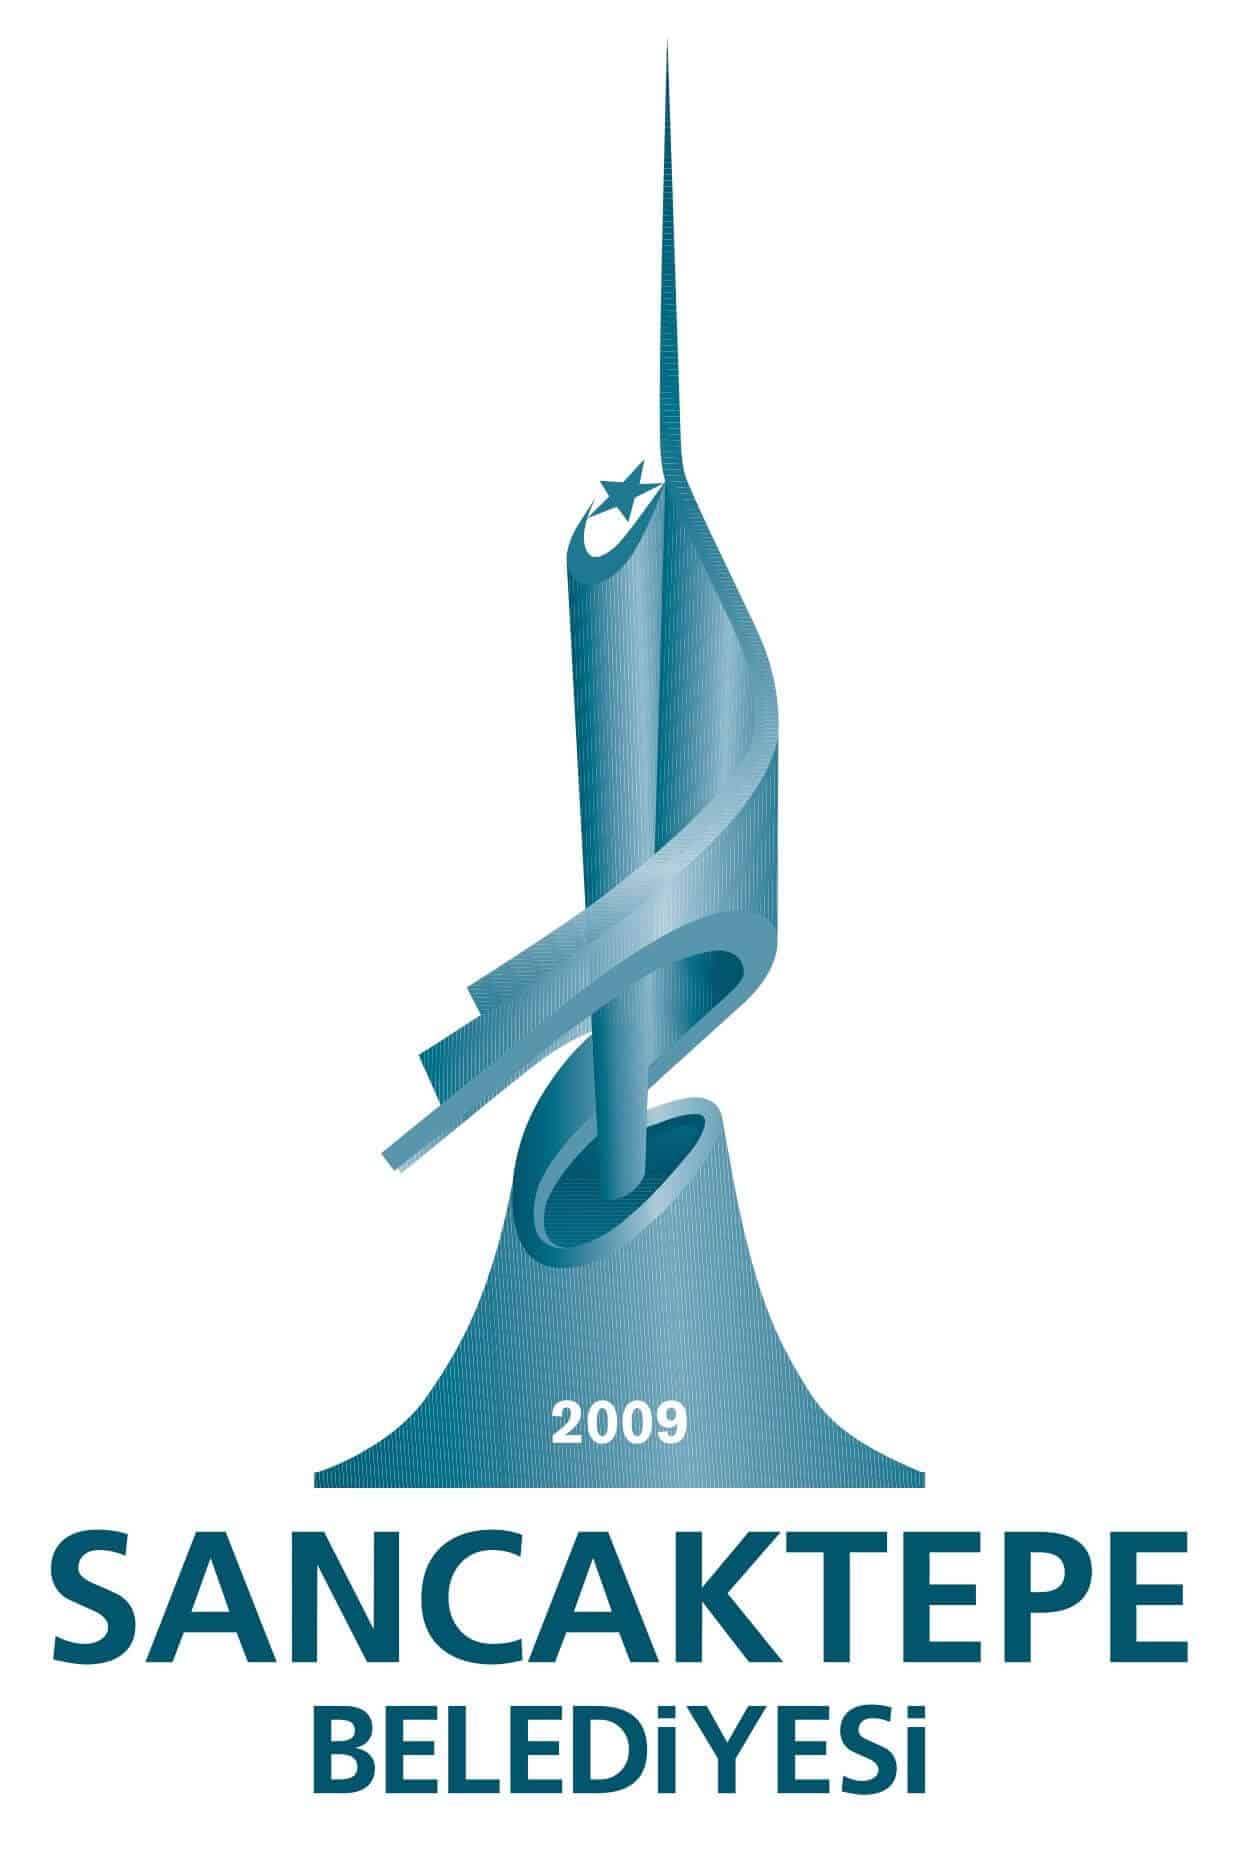 sancaktepe belediyesi logo